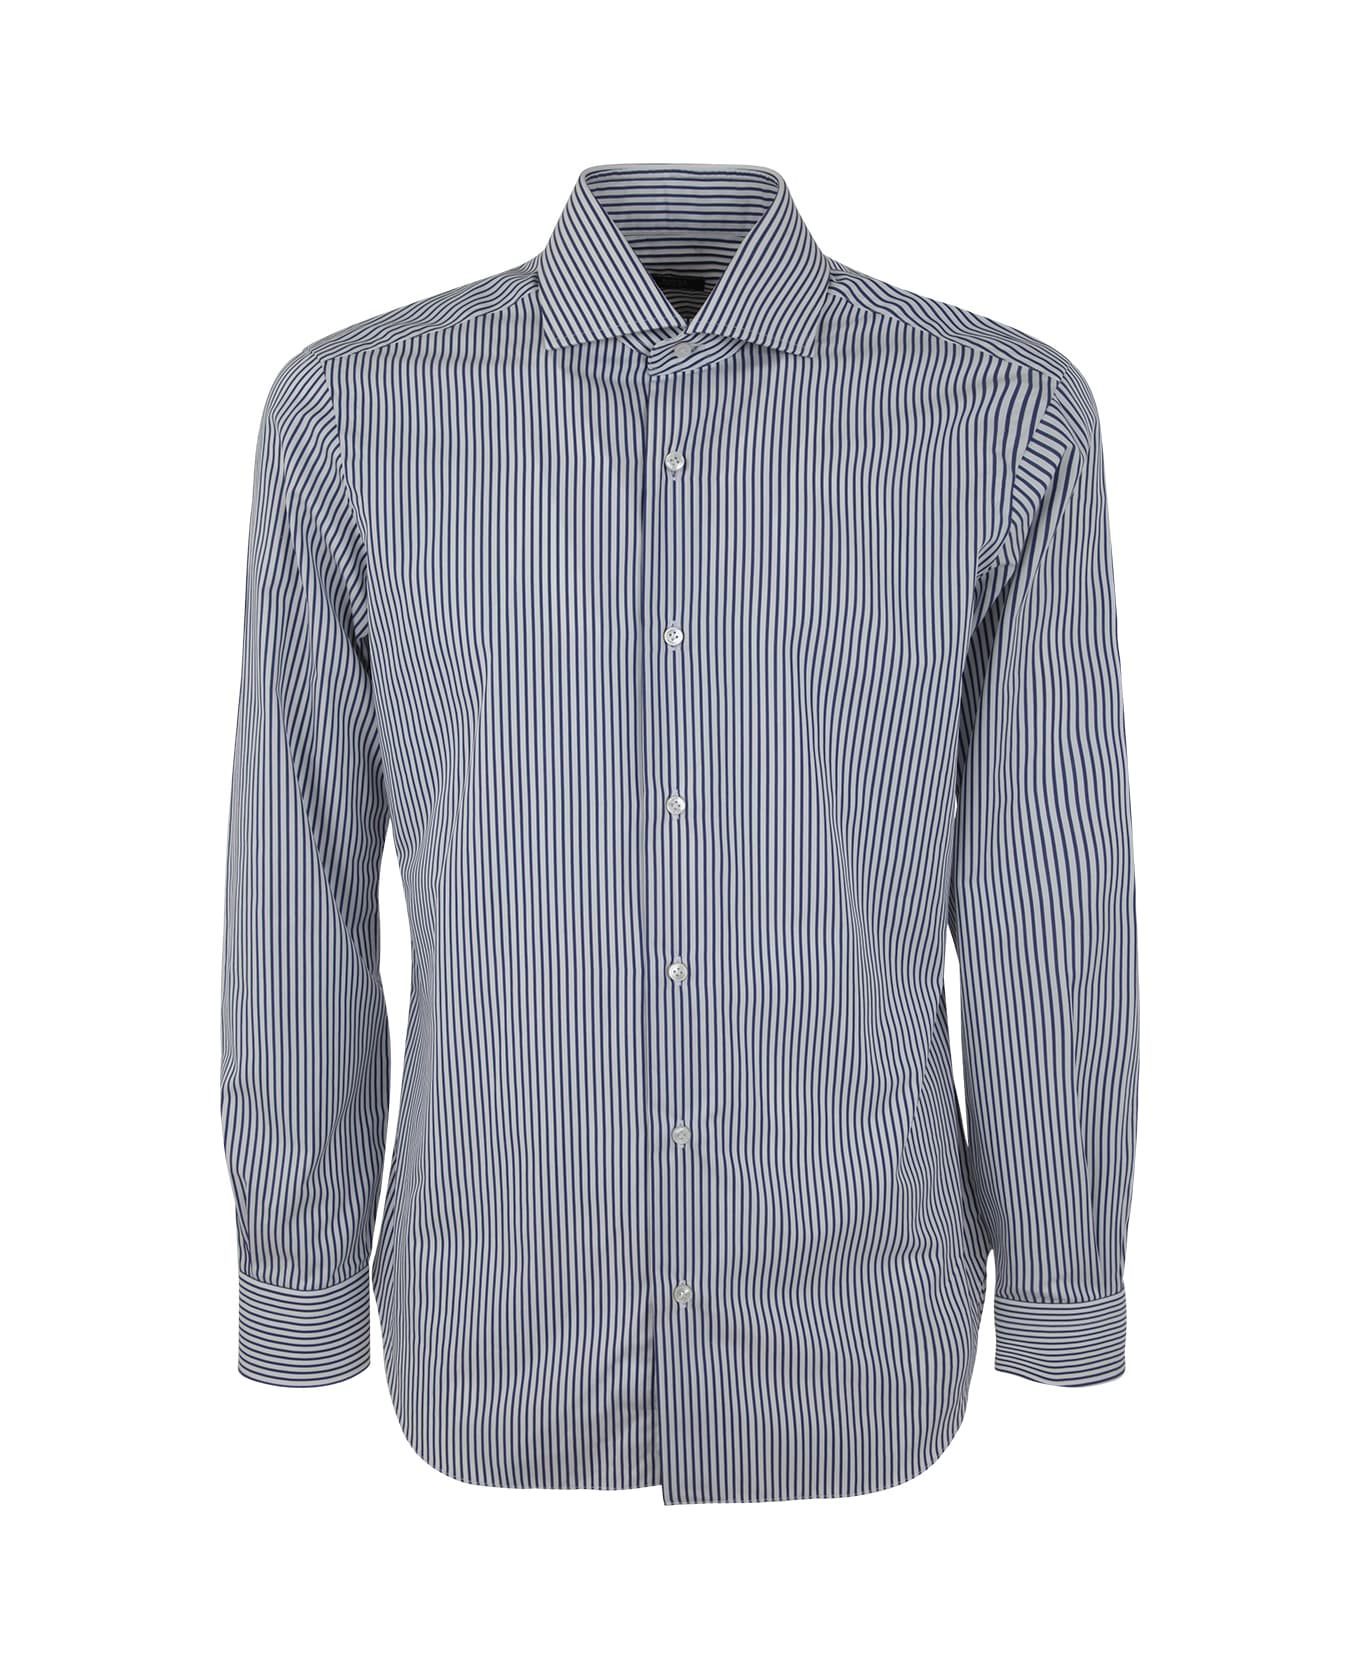 Barba Napoli Striped Shirt - White Blue シャツ